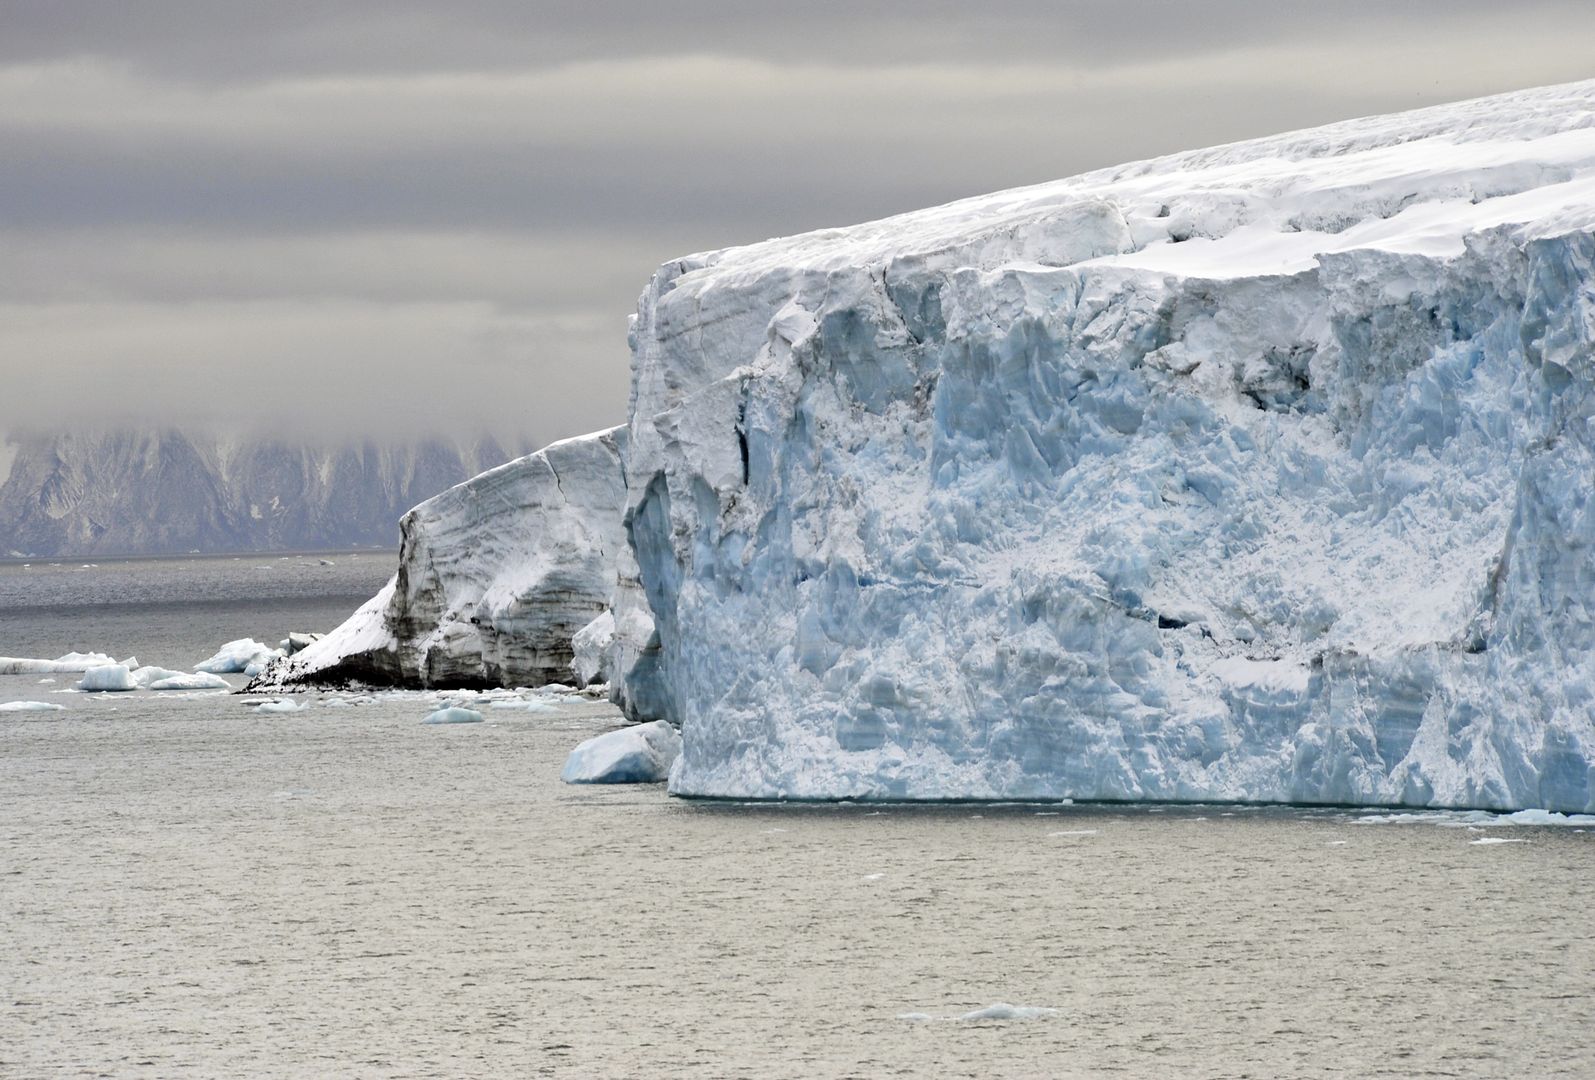 Globalne ocieplenie sprawi, że lód całkowicie zniknie. Naukowcy zdumieni